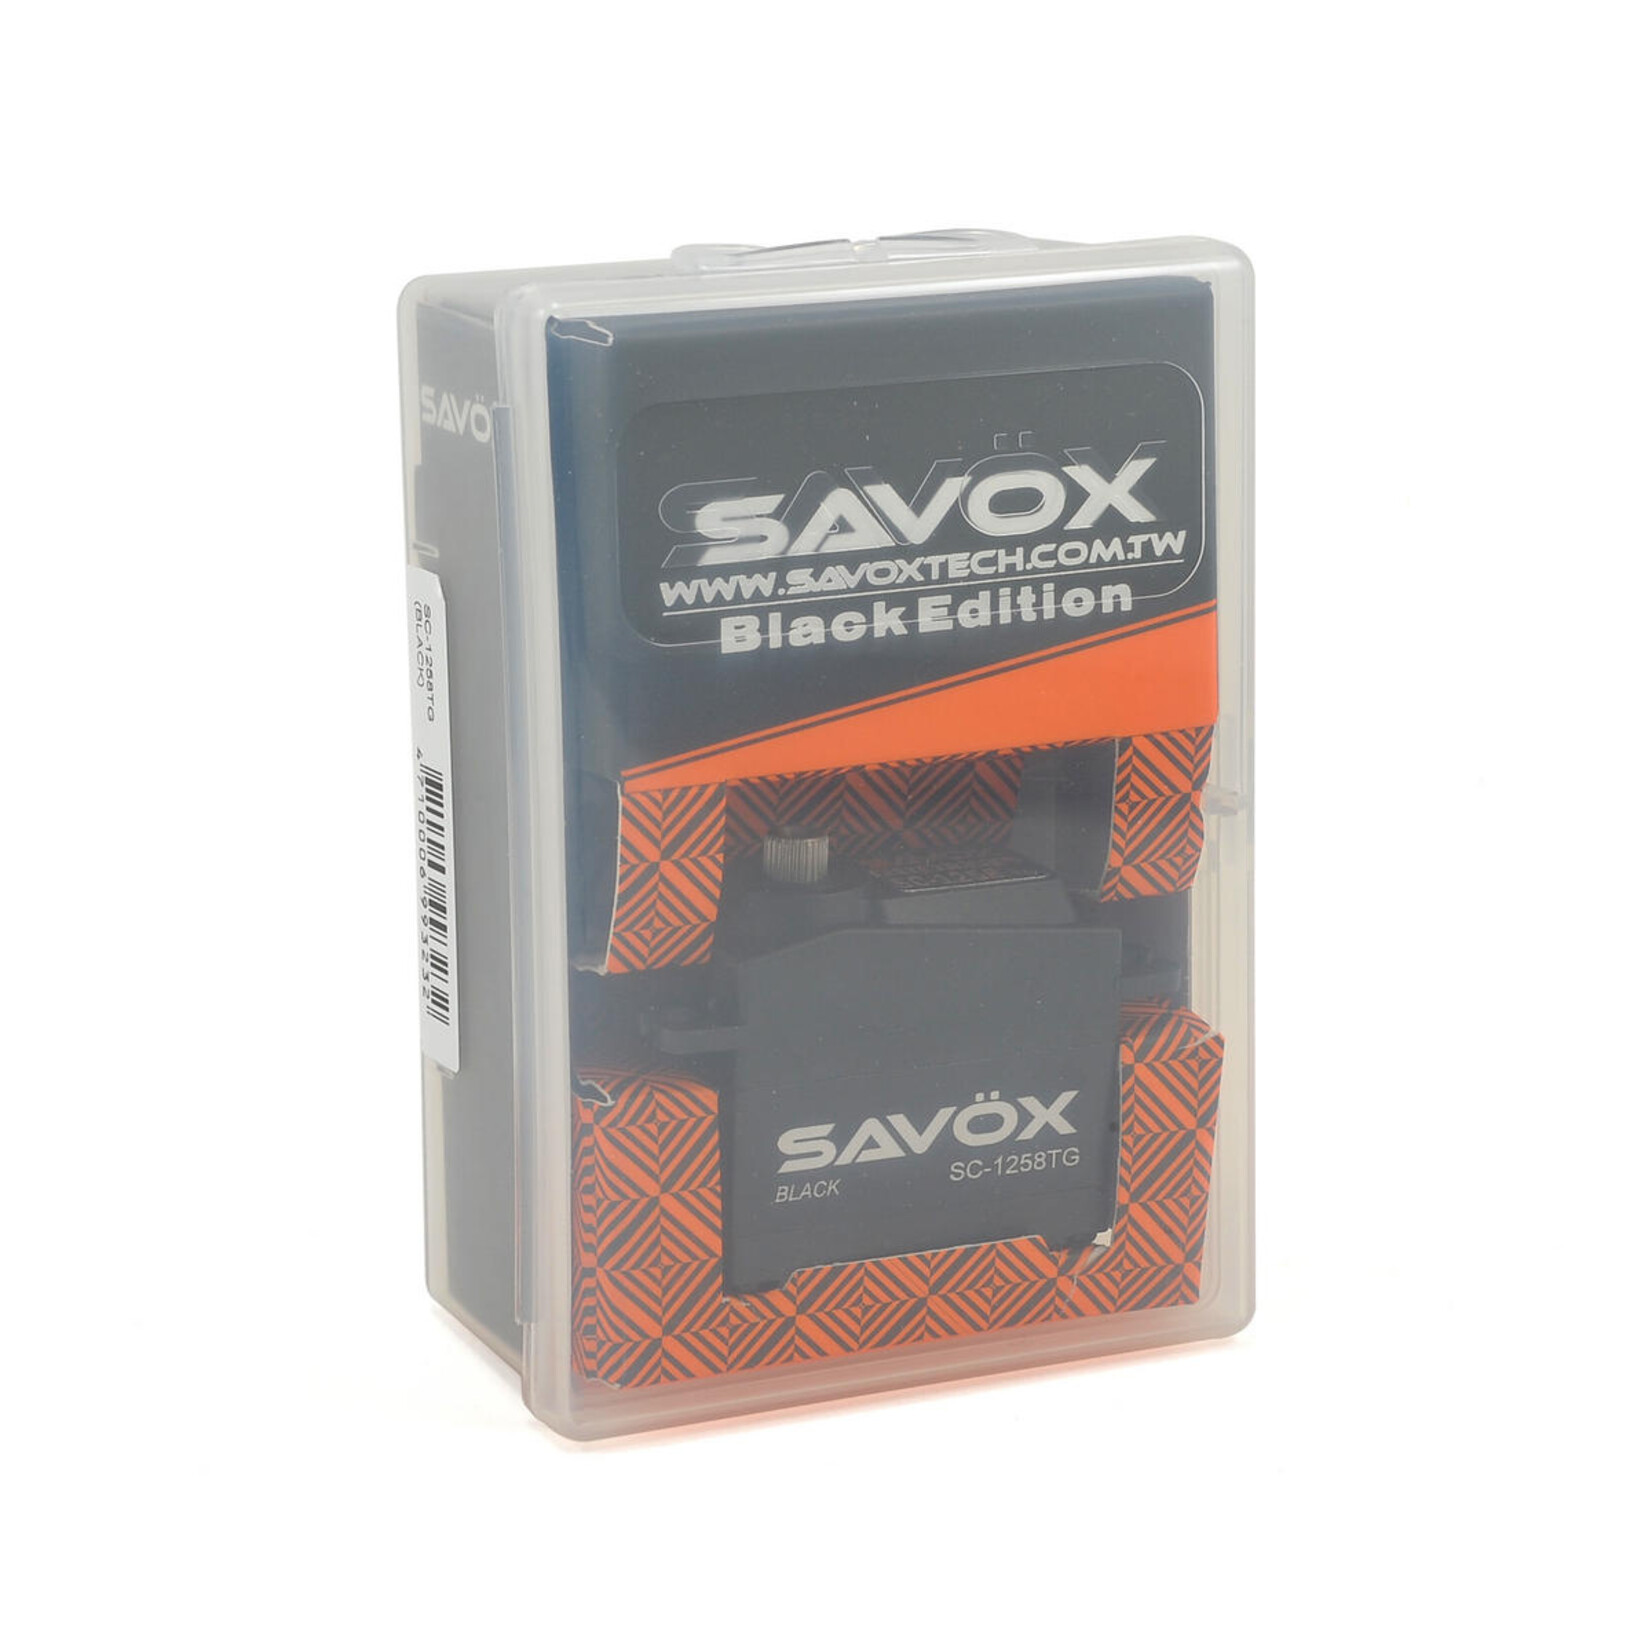 Savox Savox Black Edition Standard Digital "High Speed" Titanium Gear Servo #SC-1258TG